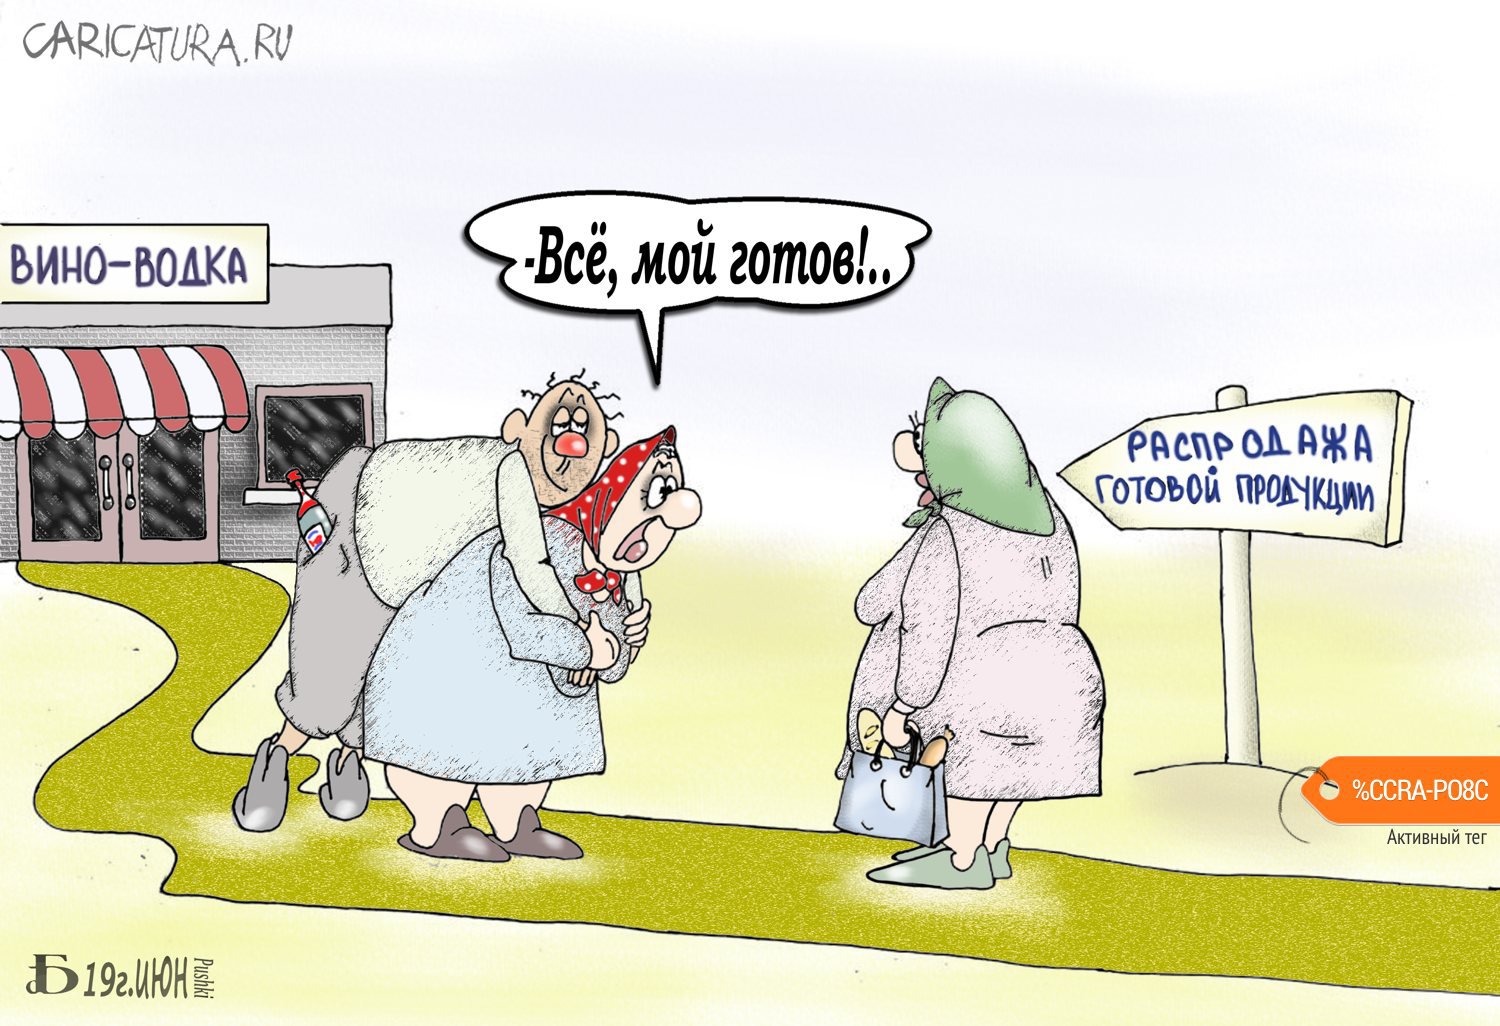 Карикатура "Про готовую продукцию", Борис Демин